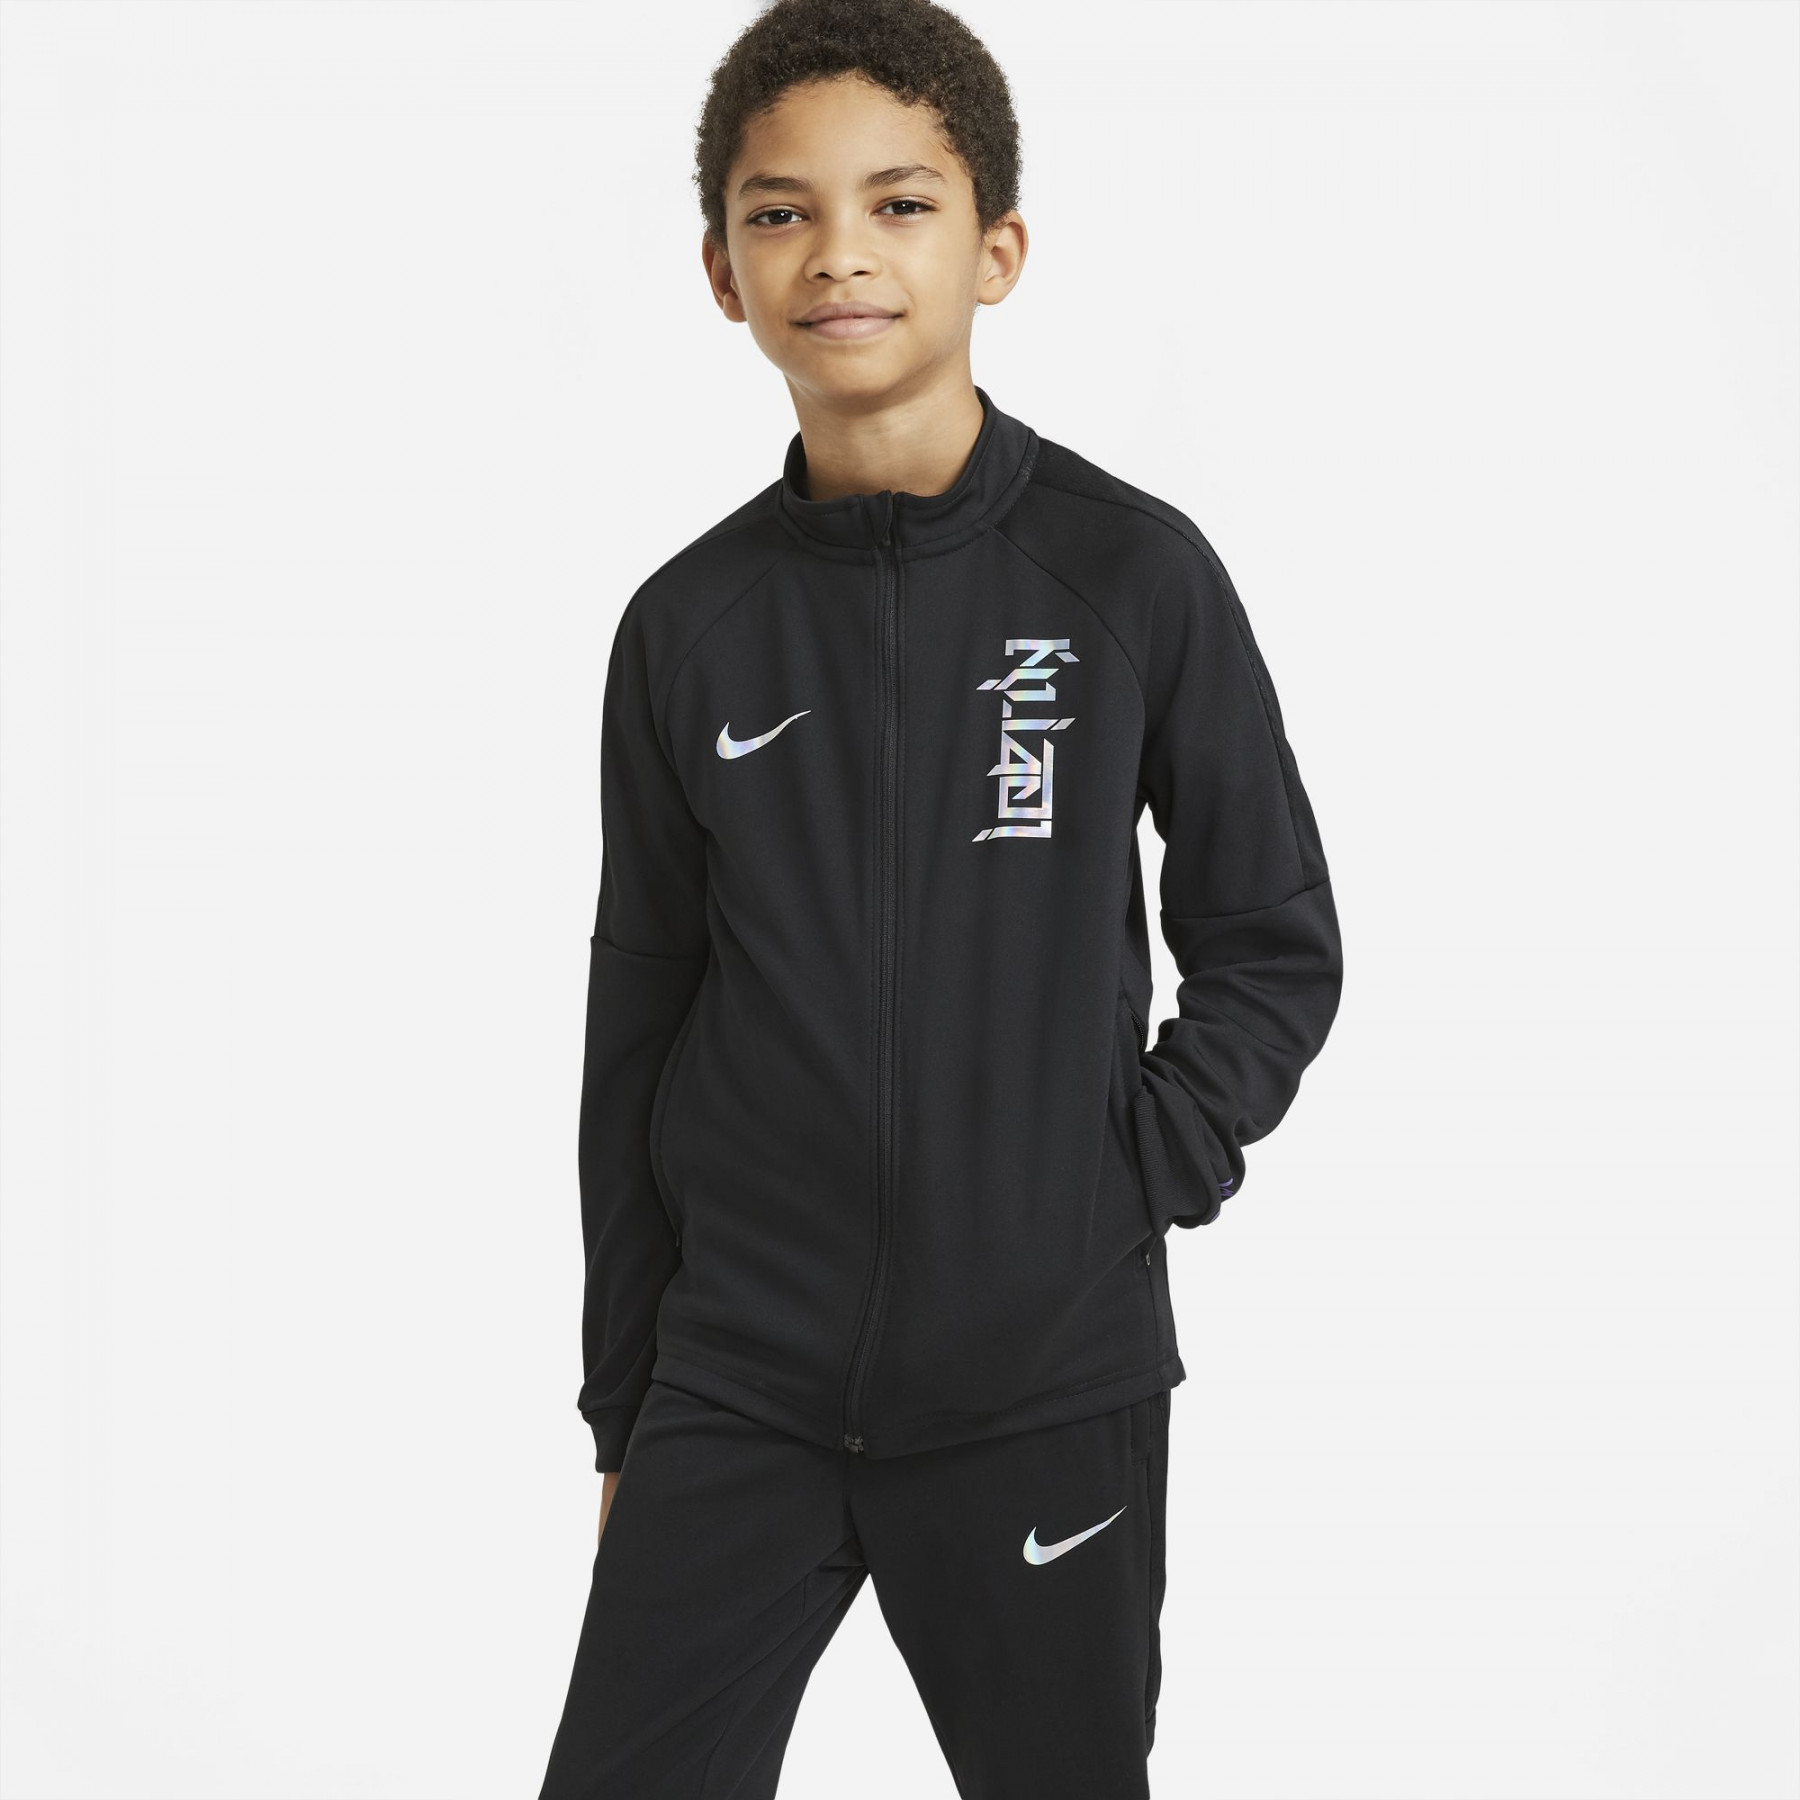 Tuta per bambini Nike Dri-FIT Kylian Mbappé